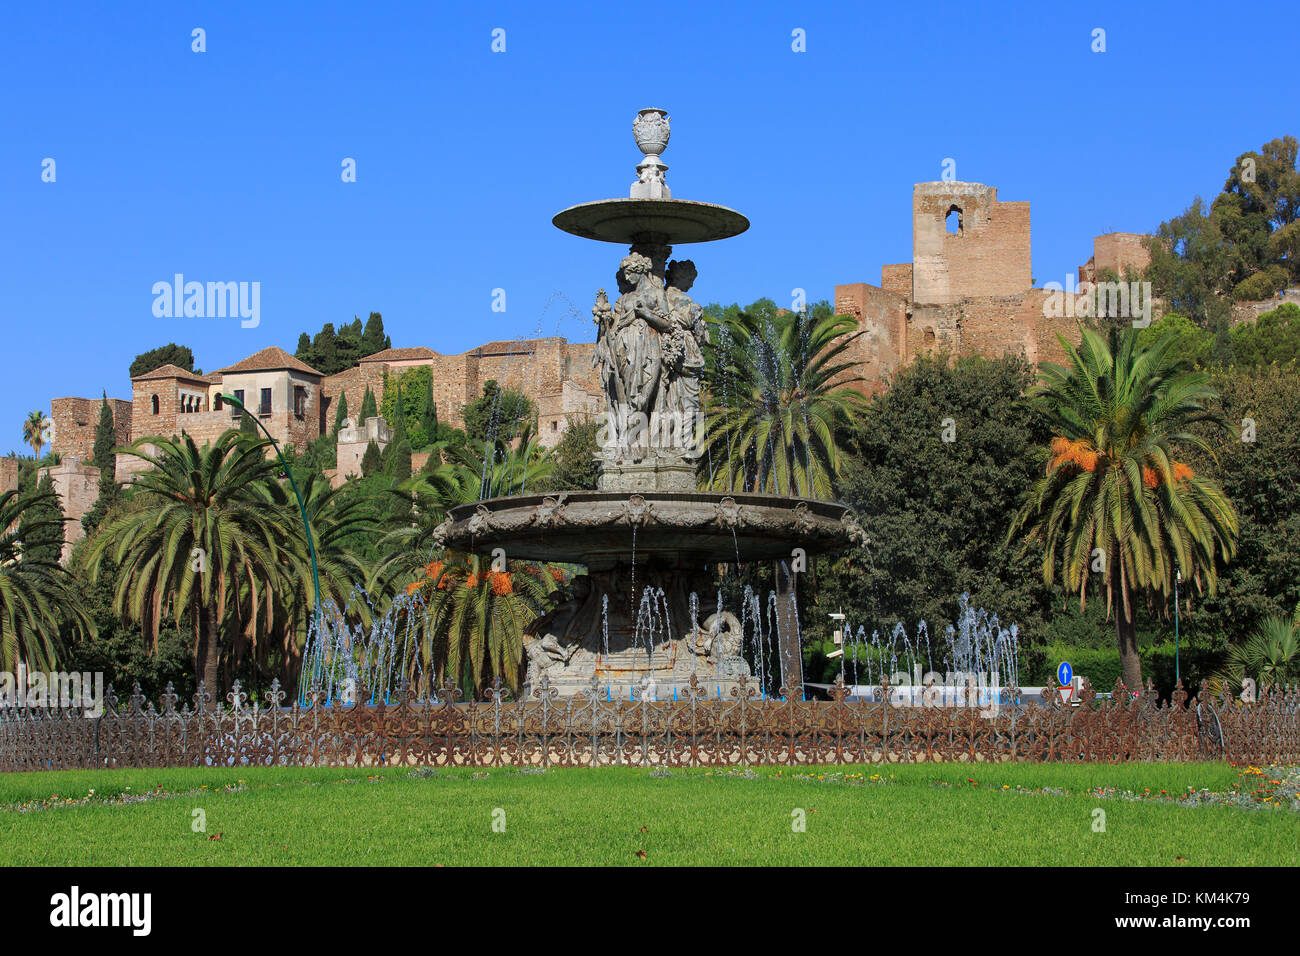 Le 19e siècle Trois Grâces ou trois nymphes fontaine située près de la 11e siècle de style mauresque Alcazaba (Citadelle) à Malaga, Espagne Banque D'Images